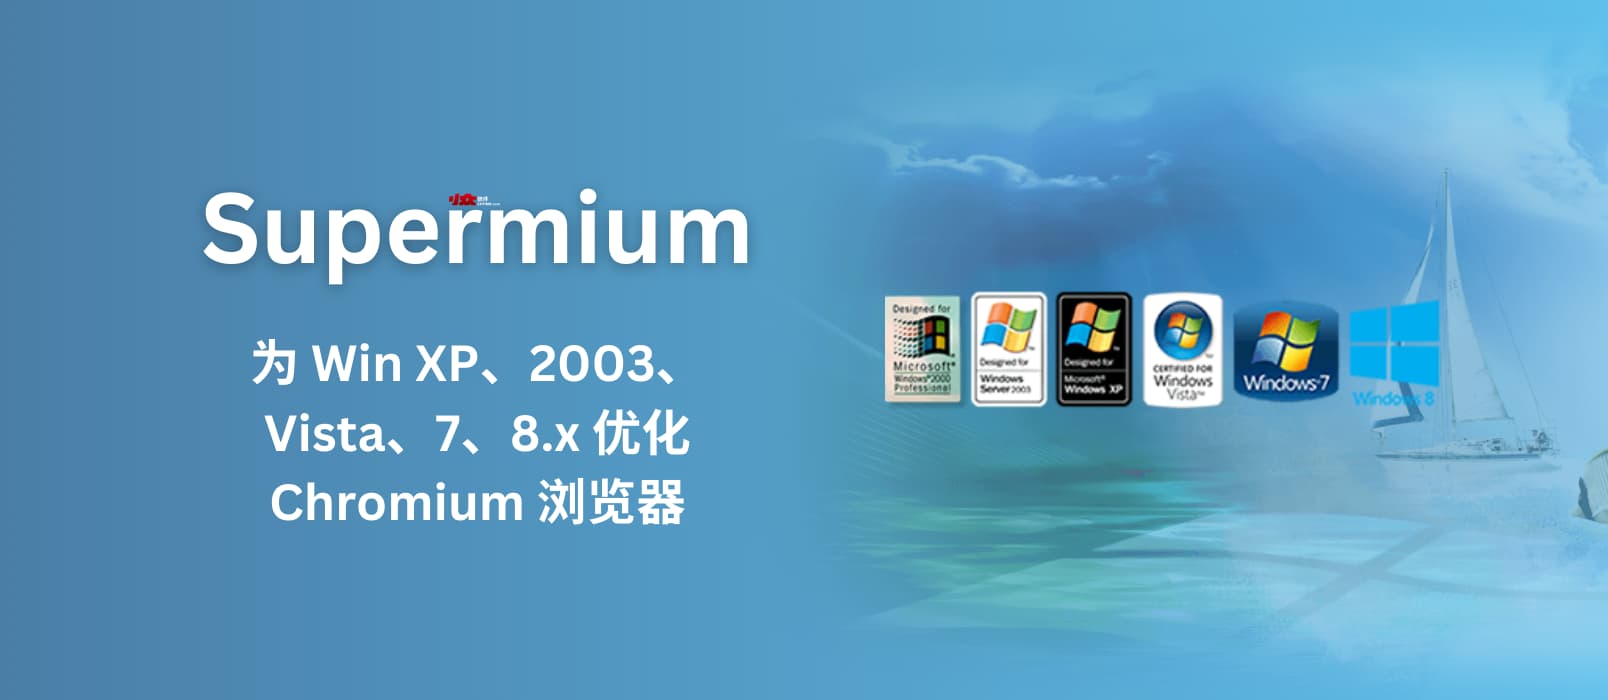 Supermium - 为 Windows XP、2003、Vista、7、8.x 优化的 Chromium 浏览器